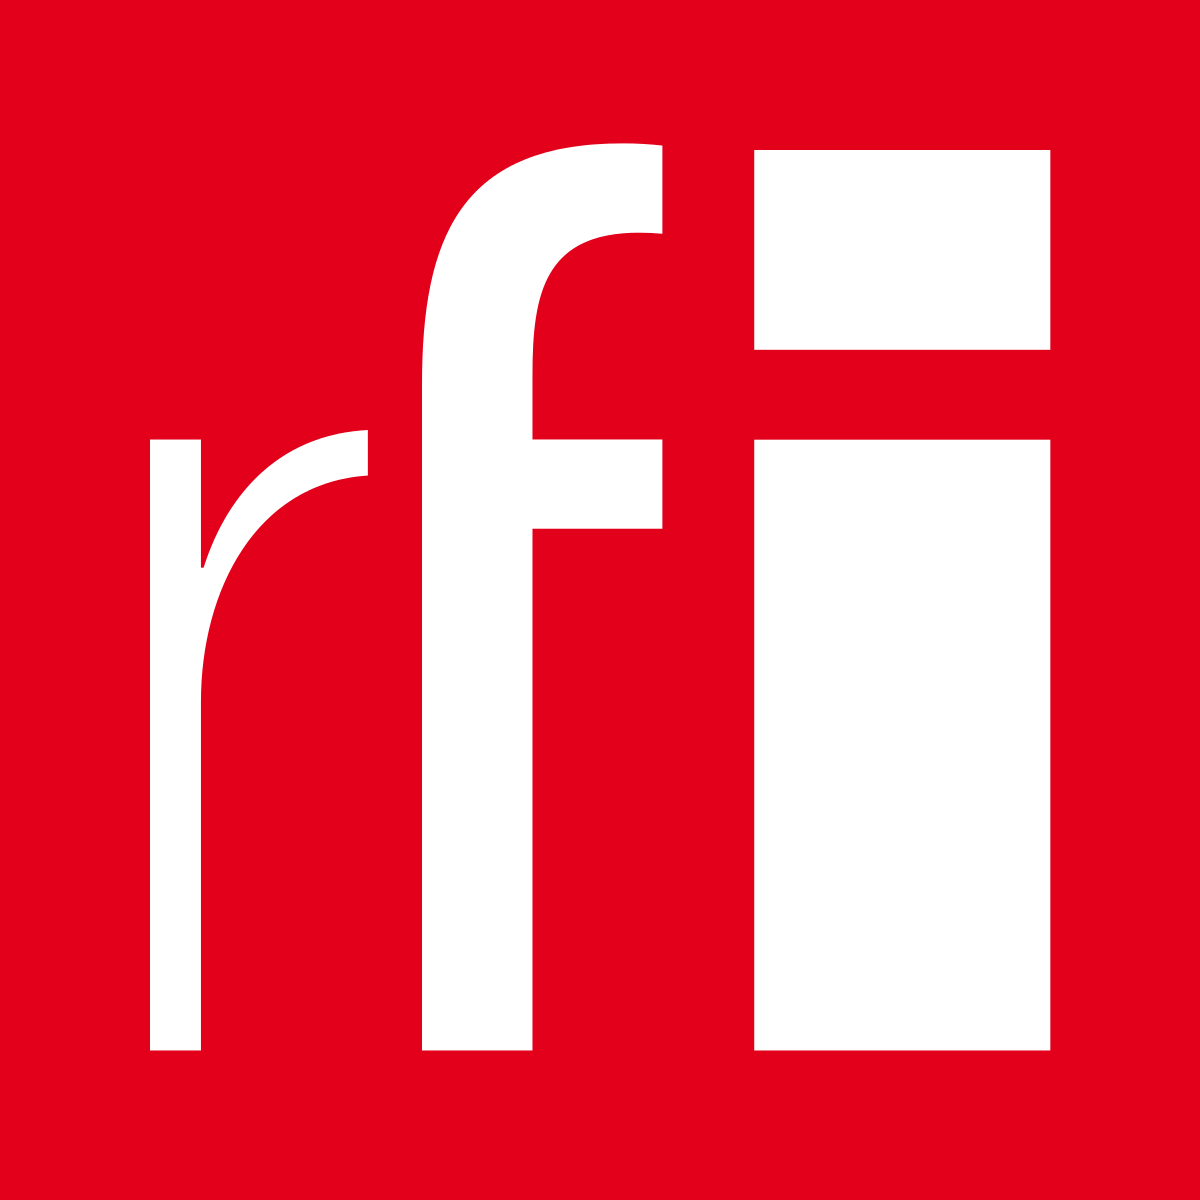 RFI_logo_2013.svg